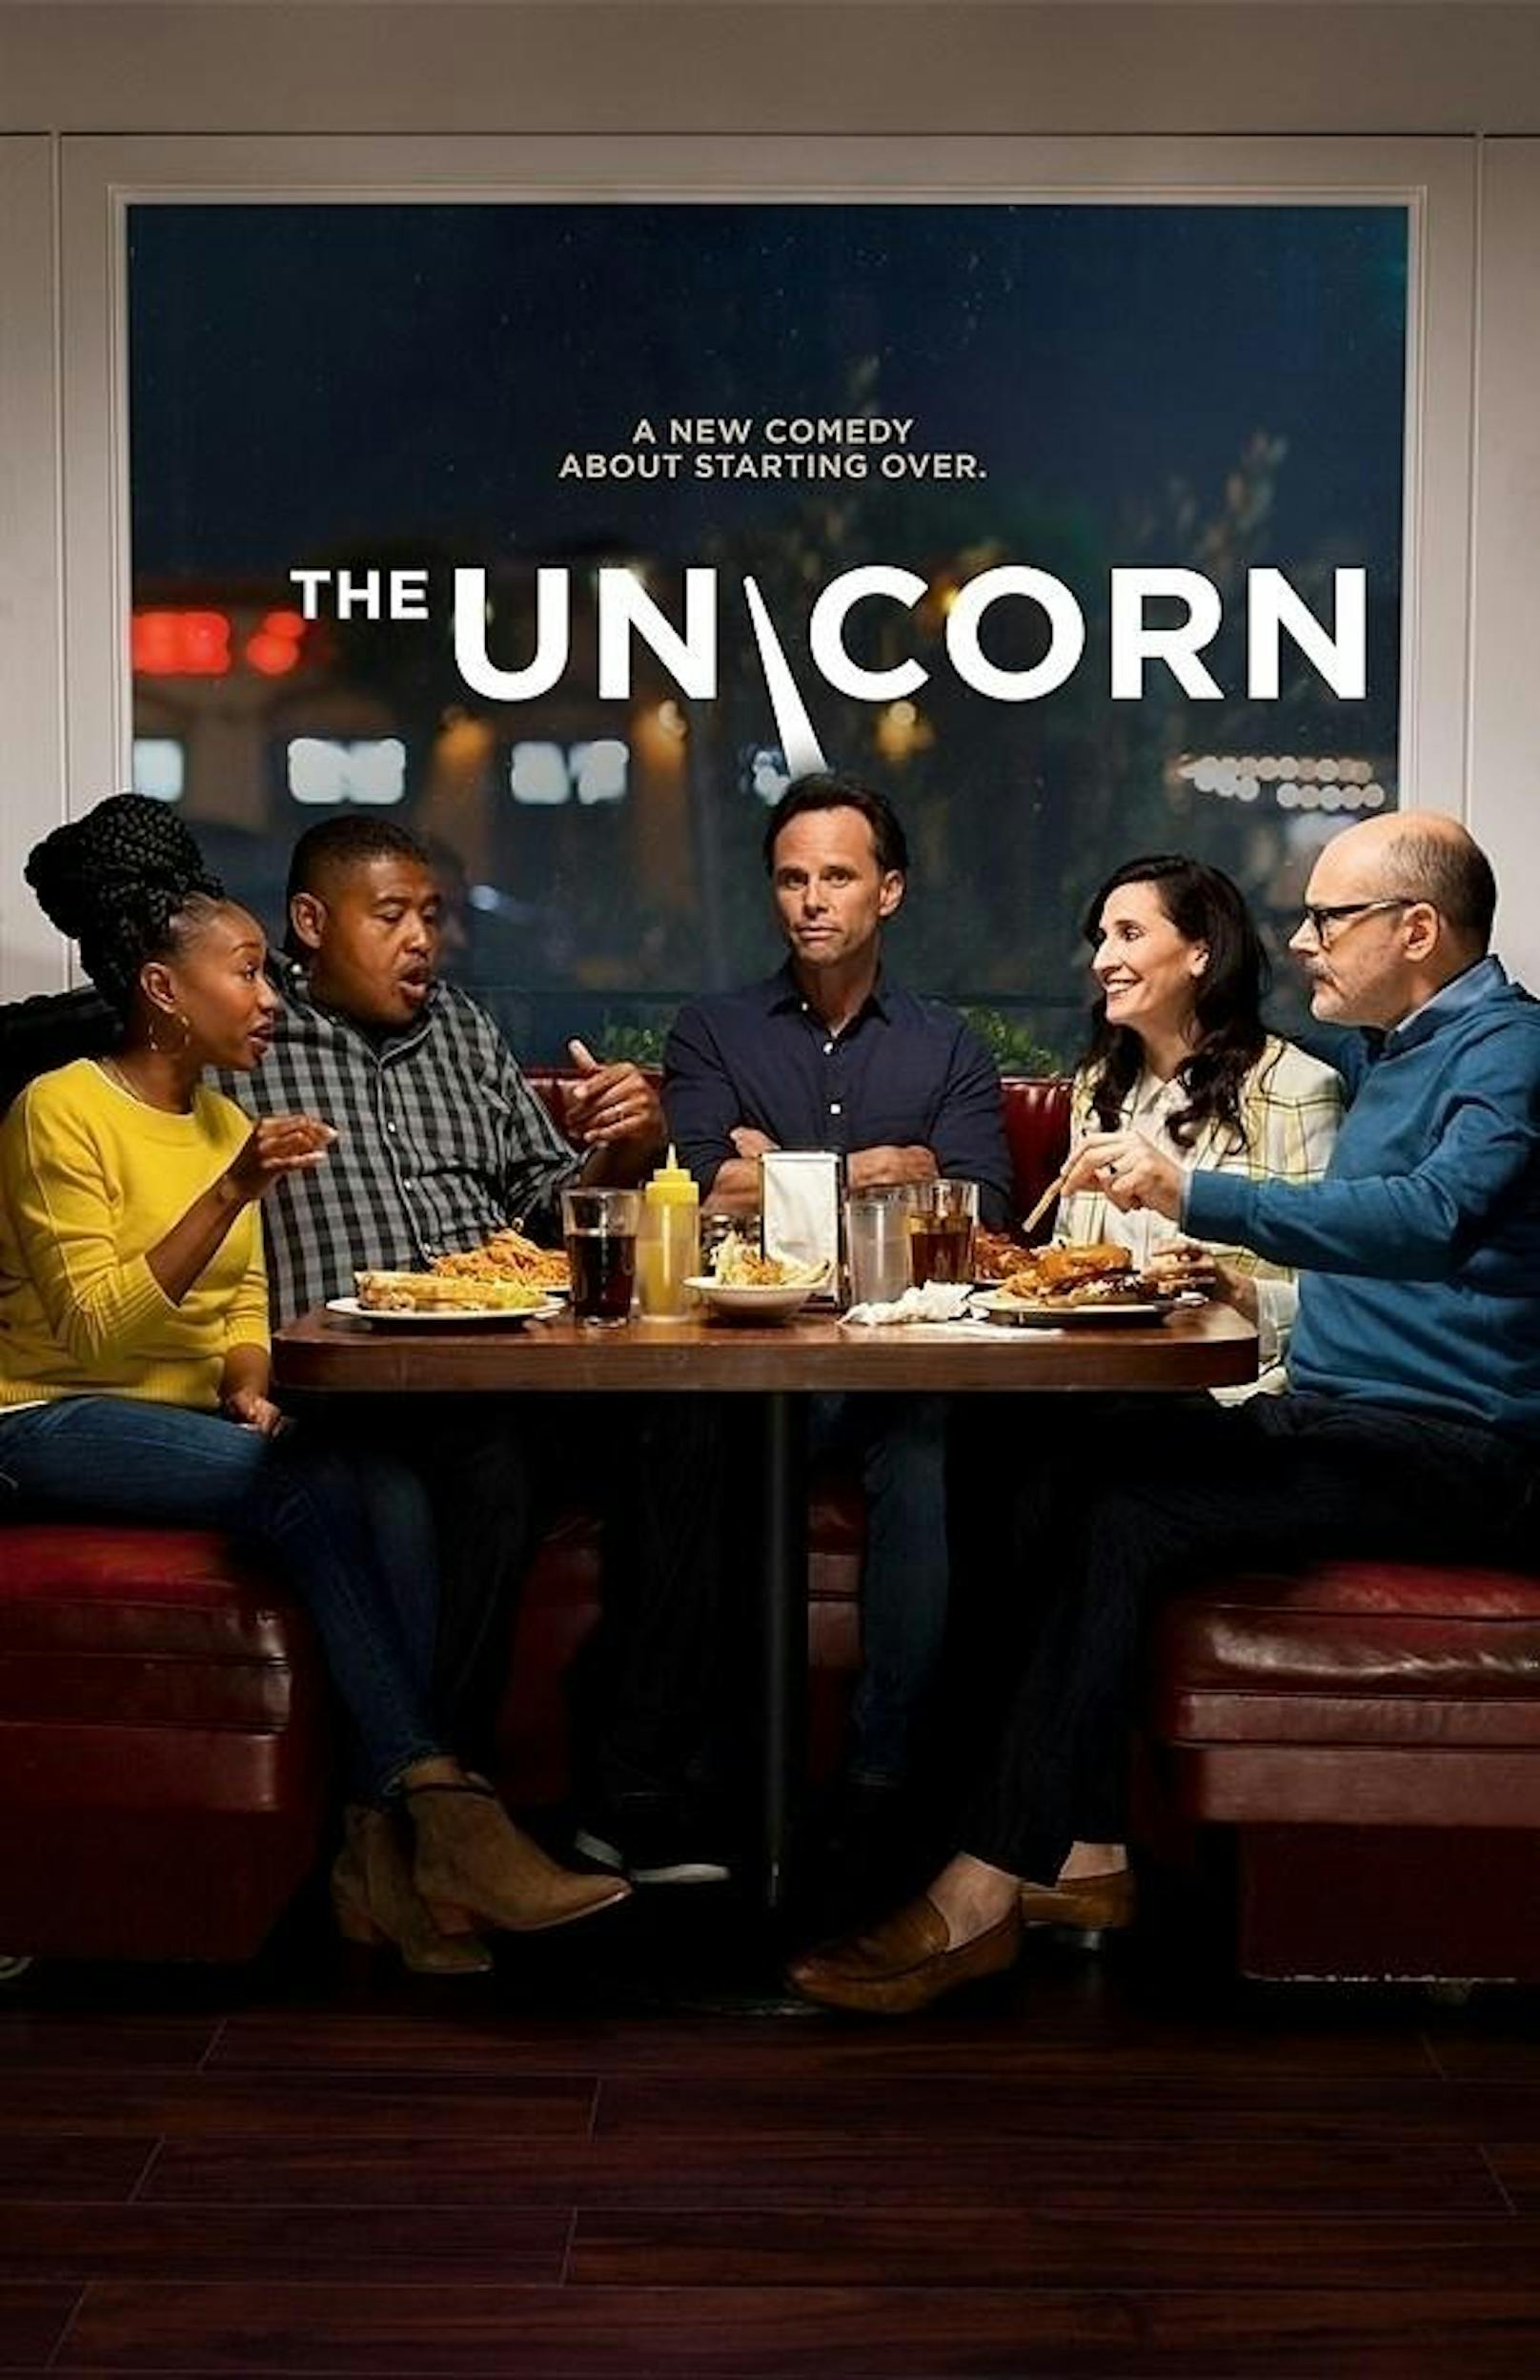 <strong>"The Unicorn" auf Sky: In der Comedyserie "The Unicorn"</strong> spielt Walton Goggins einen alleinerziehenden Witwer, der das schwierigste Jahr seines Lebens hinter sich lassen und sein Leben neu beginnen will.